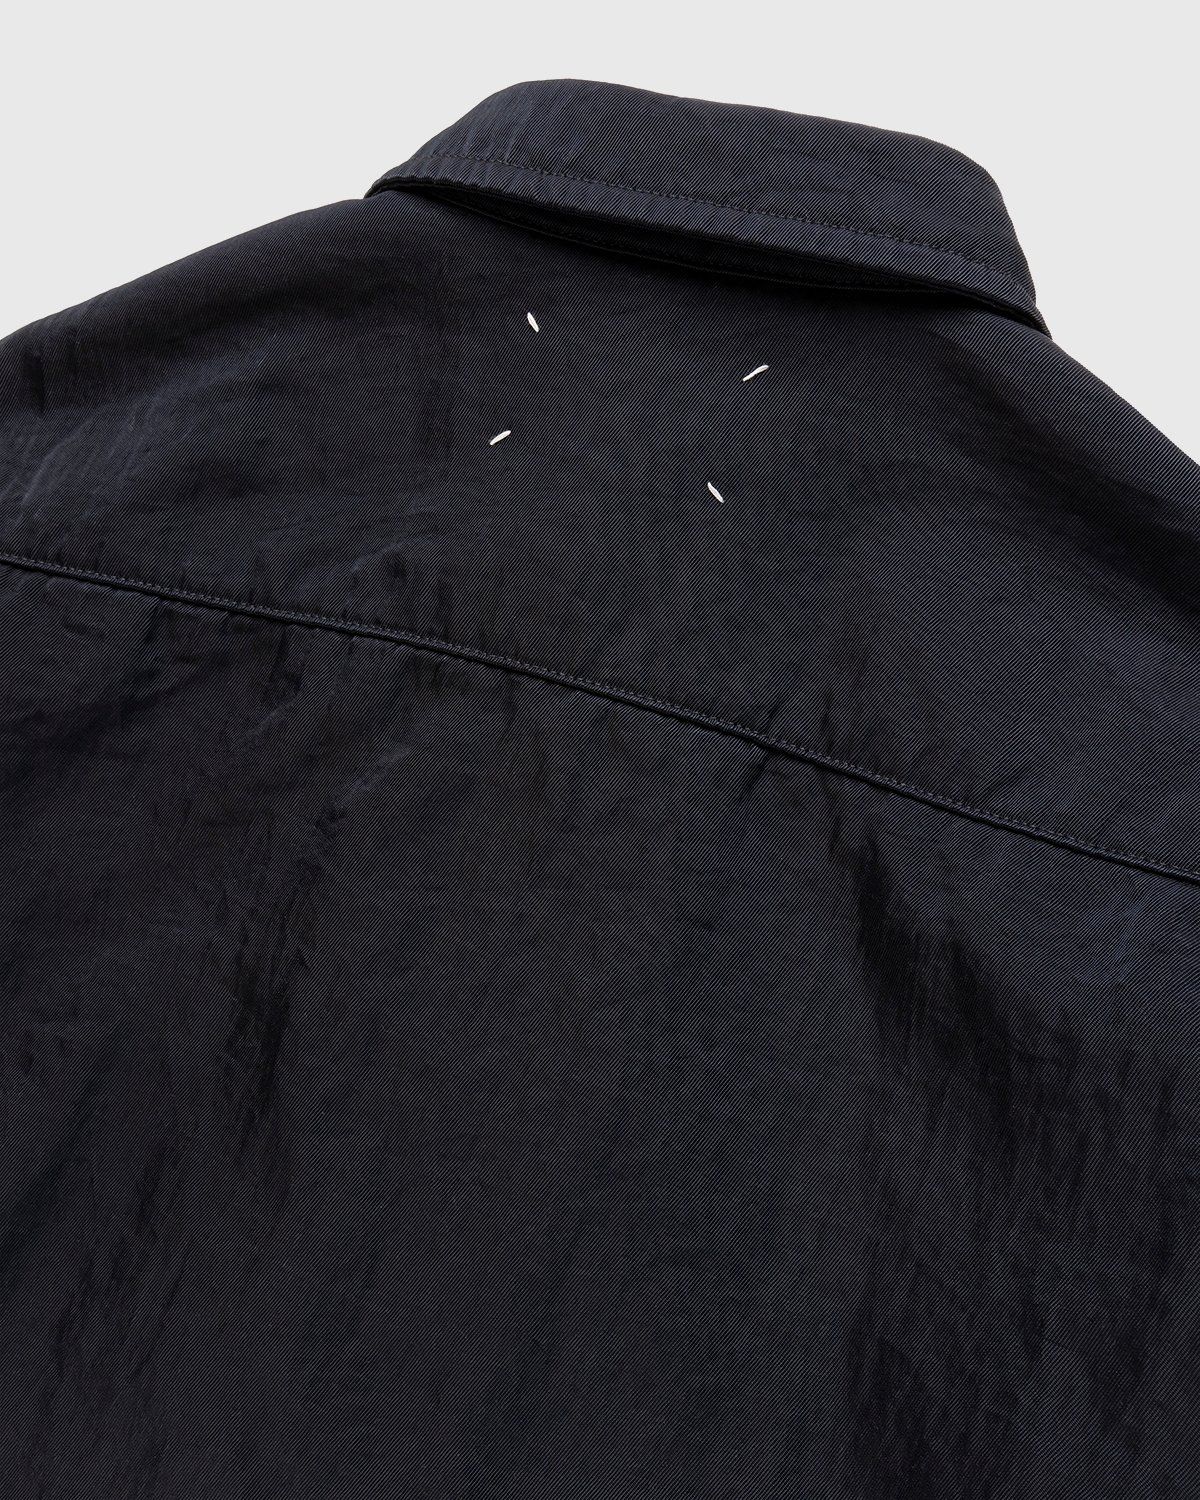 Maison Margiela – Oversized Nylon Jacket Navy - Longsleeve Shirts - Black - Image 3